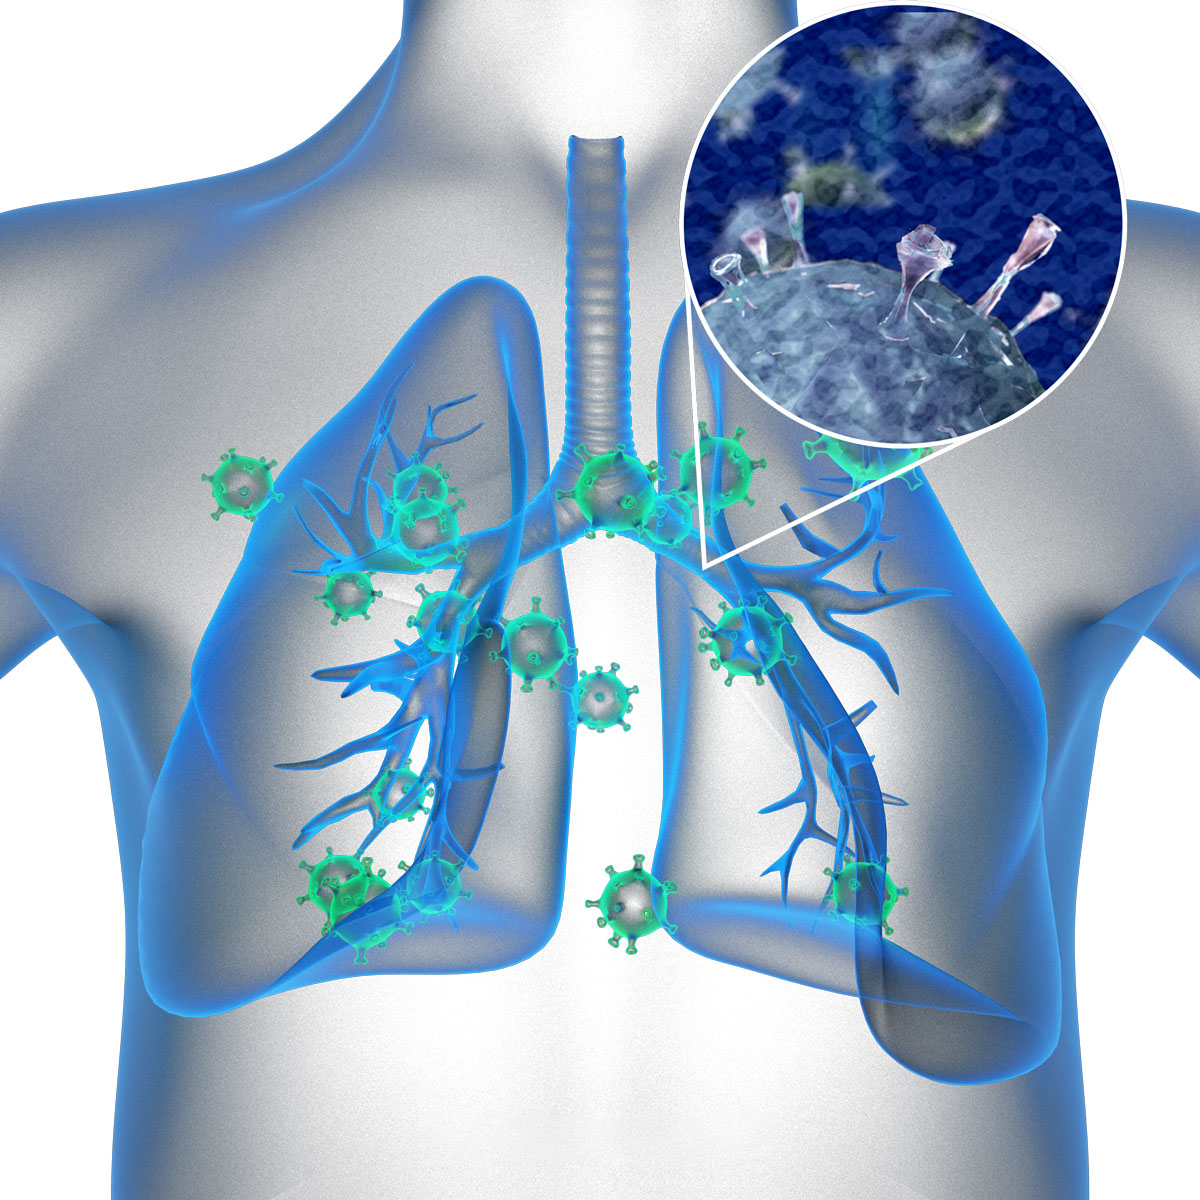 Virut RSV là nguyên nhân gây ra bệnh phổi hiện nay ở trẻ